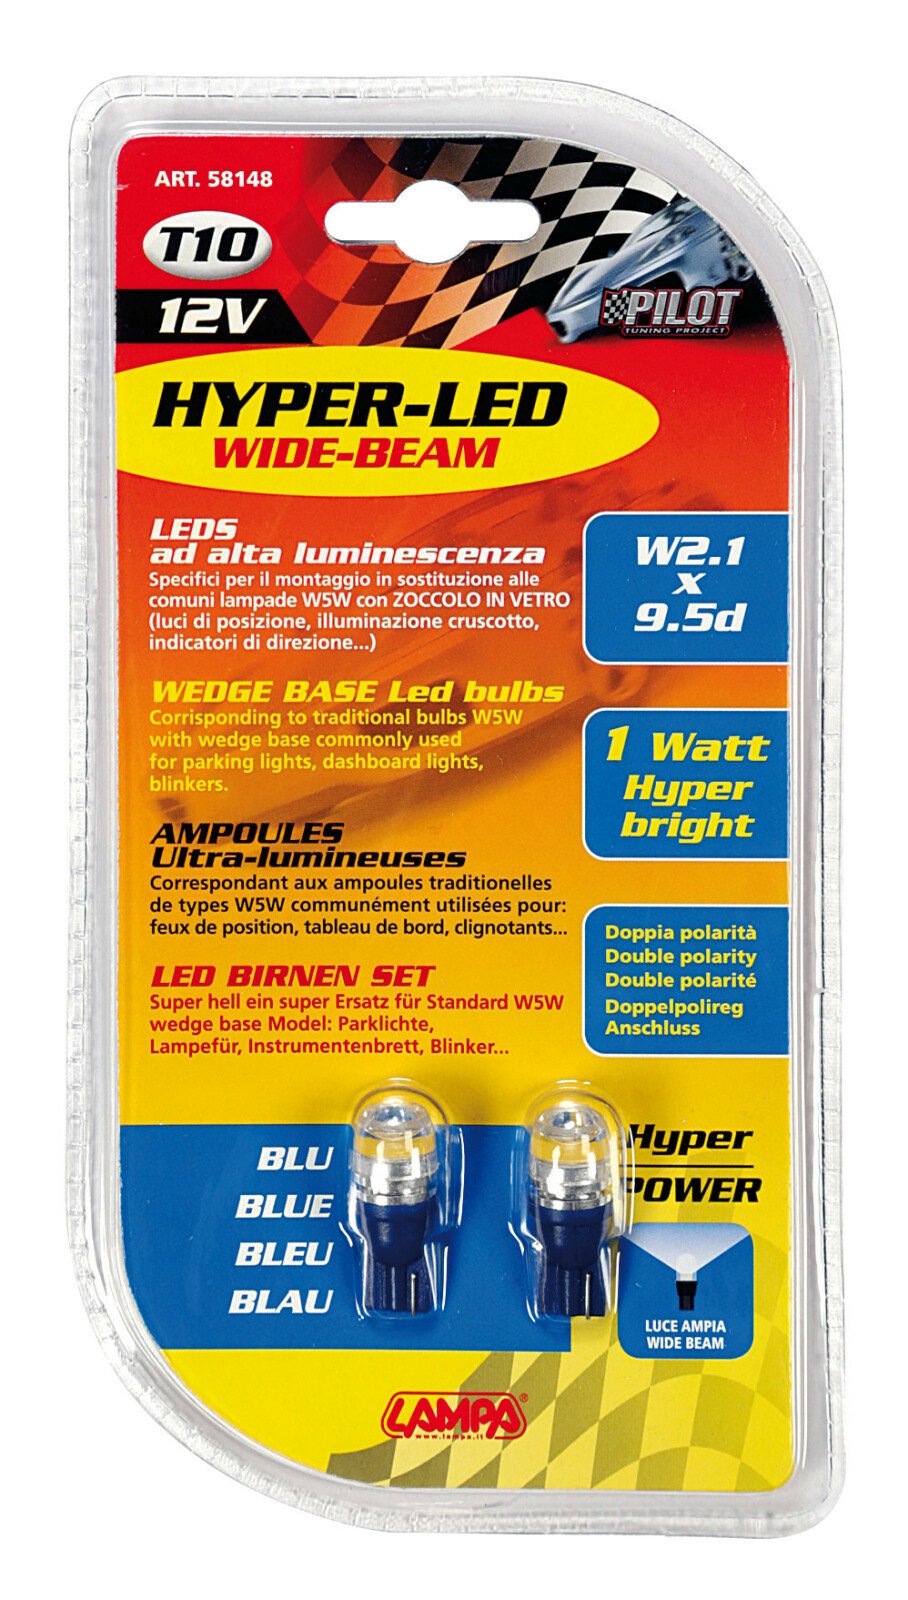 12V Hyper-Led 2 - 1 SMD x 2 chips - T10 - W2,1x9,5d 2 db - Kék thumb